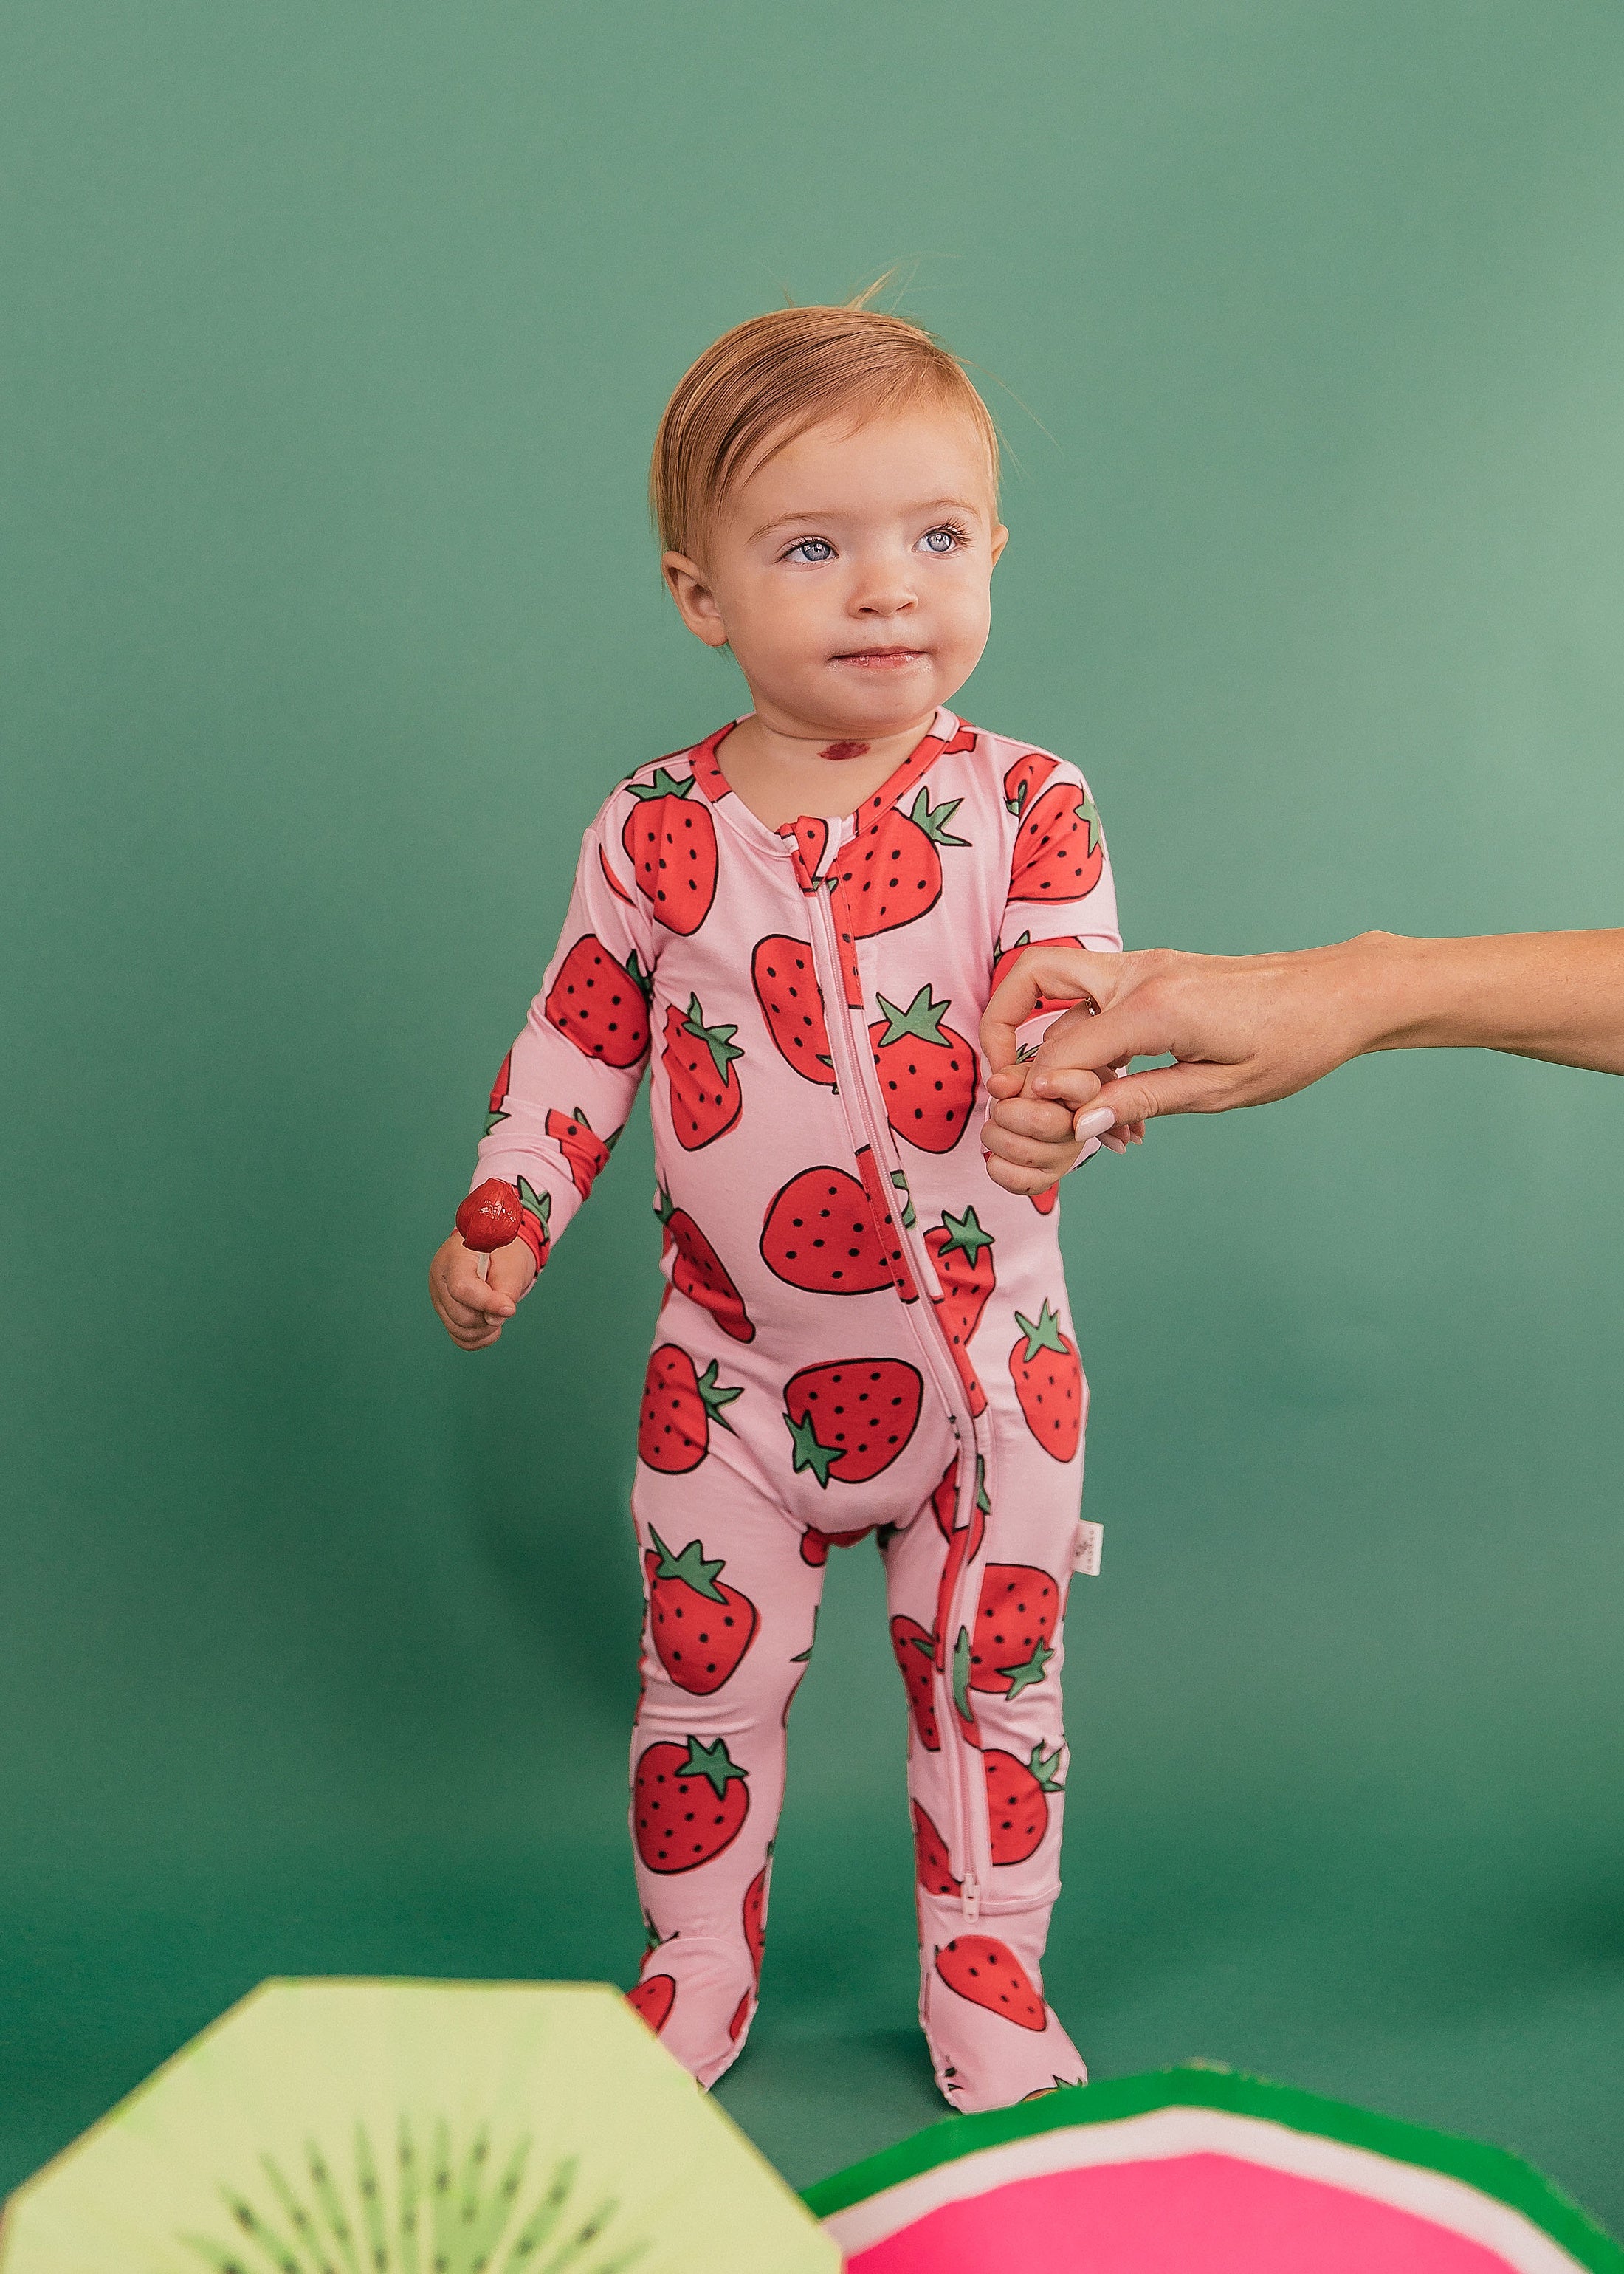 Berry-licious Footie Pajama